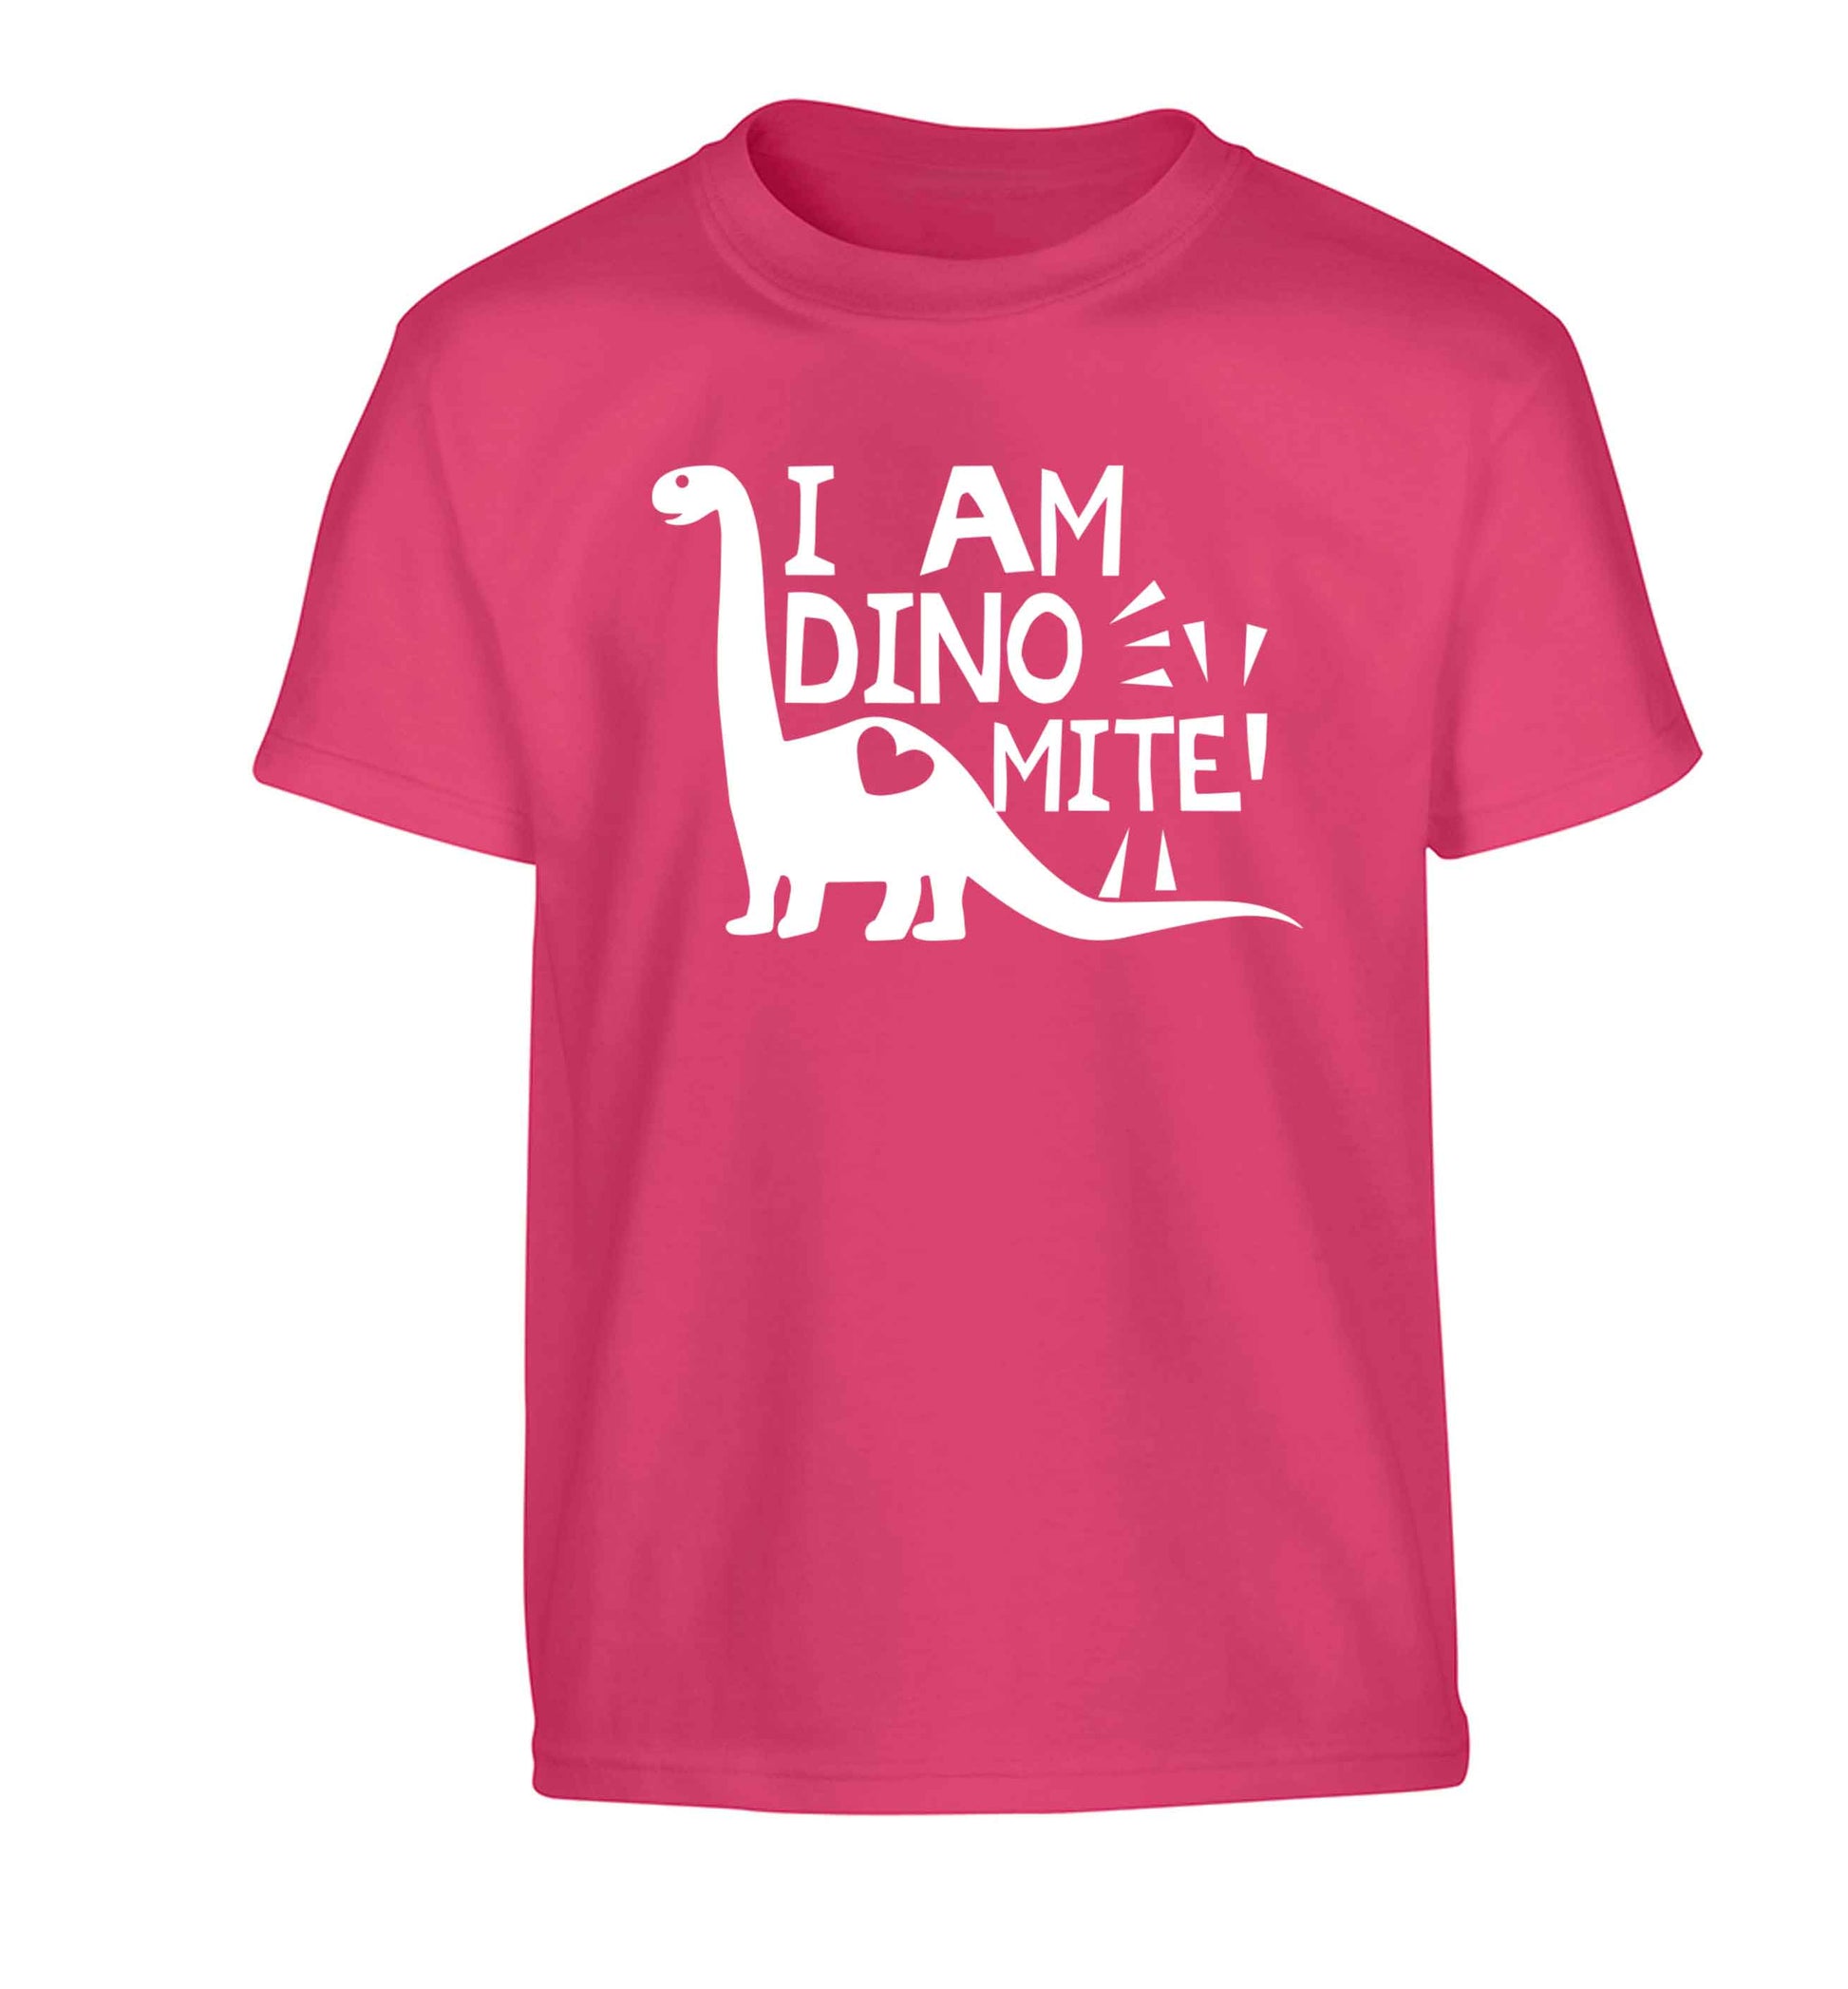 I am dinomite! Children's pink Tshirt 12-13 Years